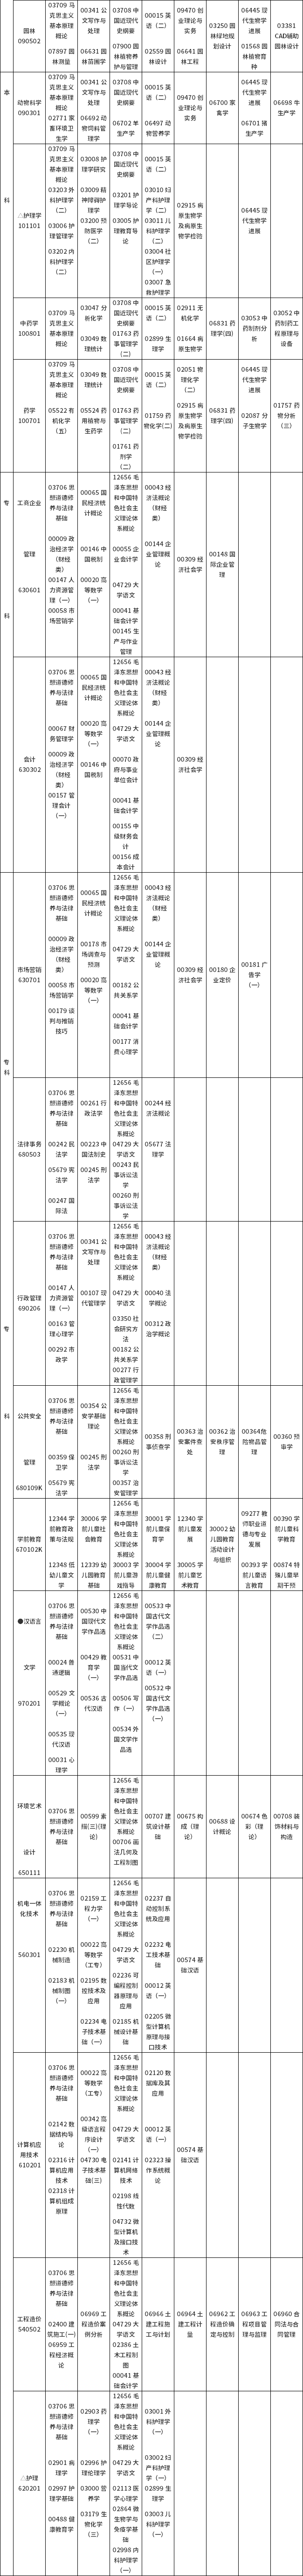 江西省2022年10月自学考试课程安排表